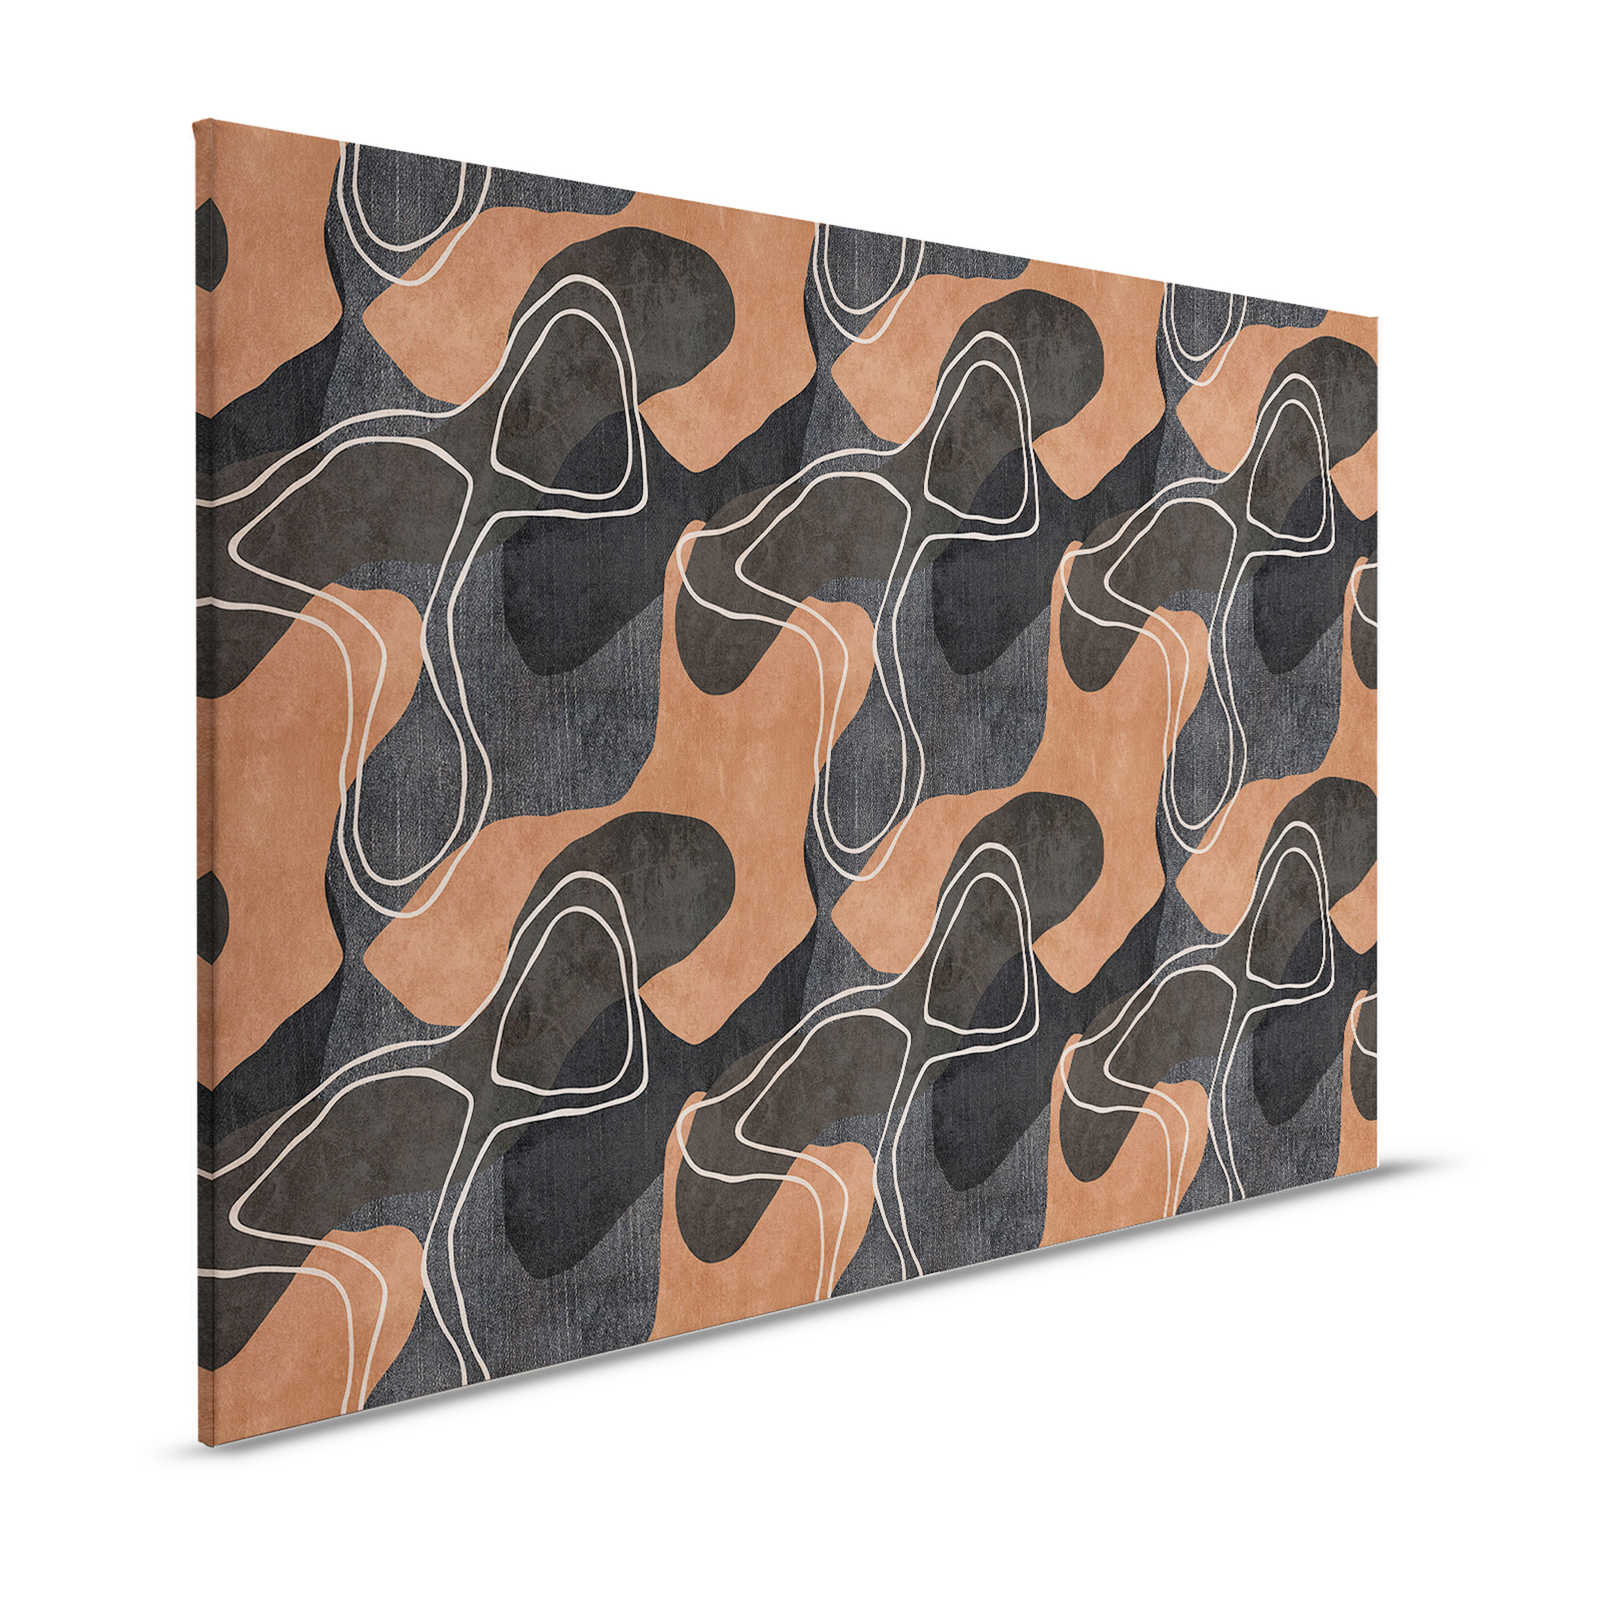 Terra 1 - Lienzo etno con diseño abstracto en tonos tierra - 1,20 m x 0,80 m
